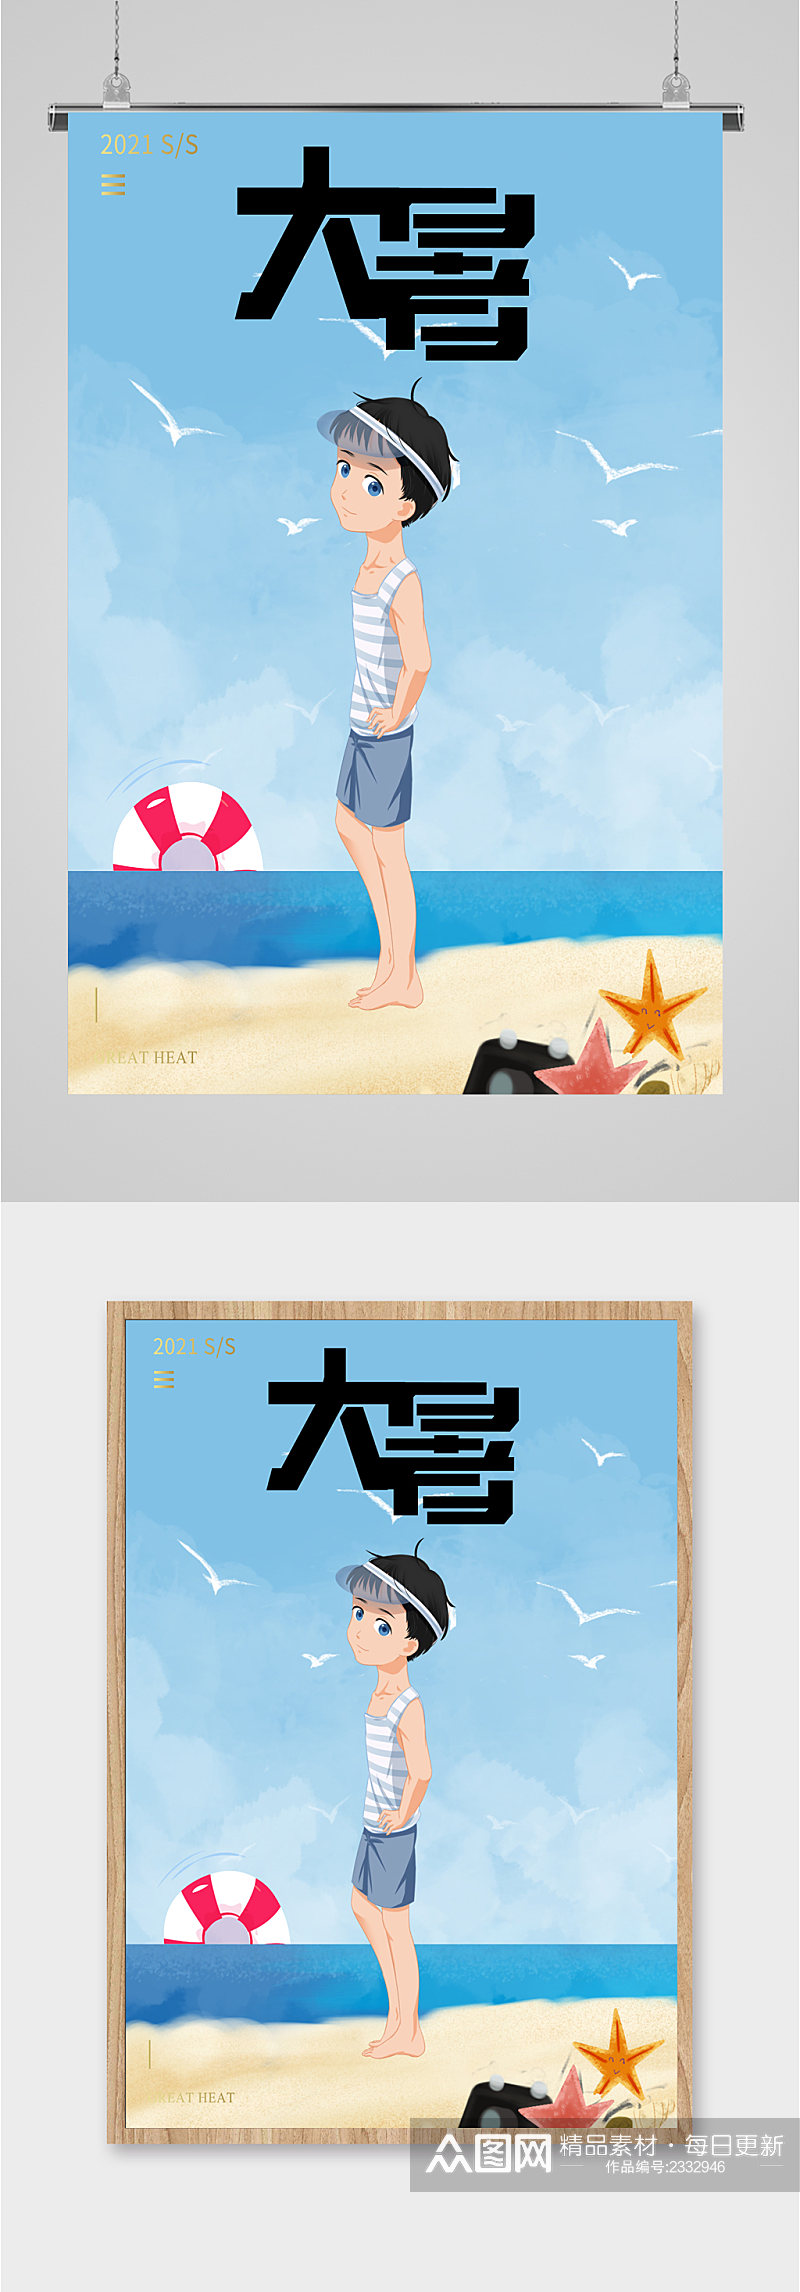 大暑节气男孩海边手绘海报素材